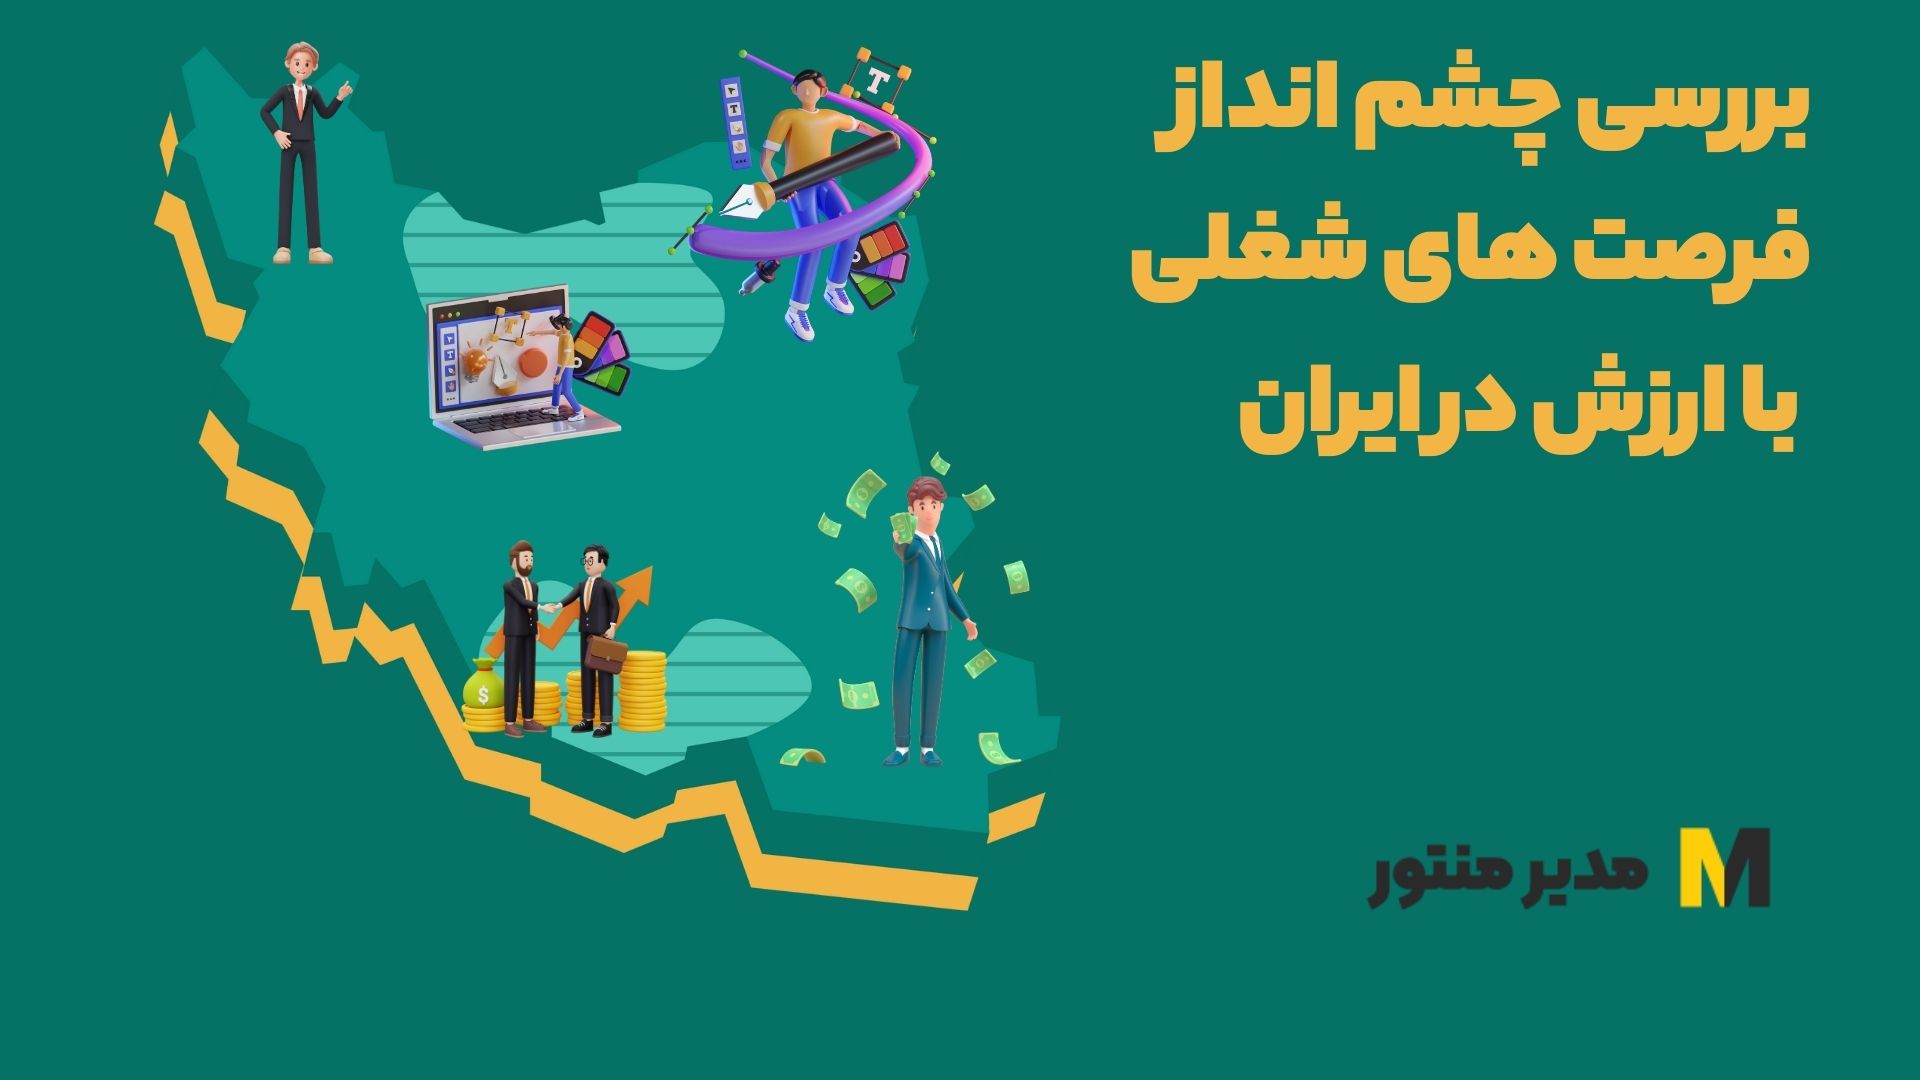 بررسی چشم انداز فرصت های شغلی با ارزش در ایران